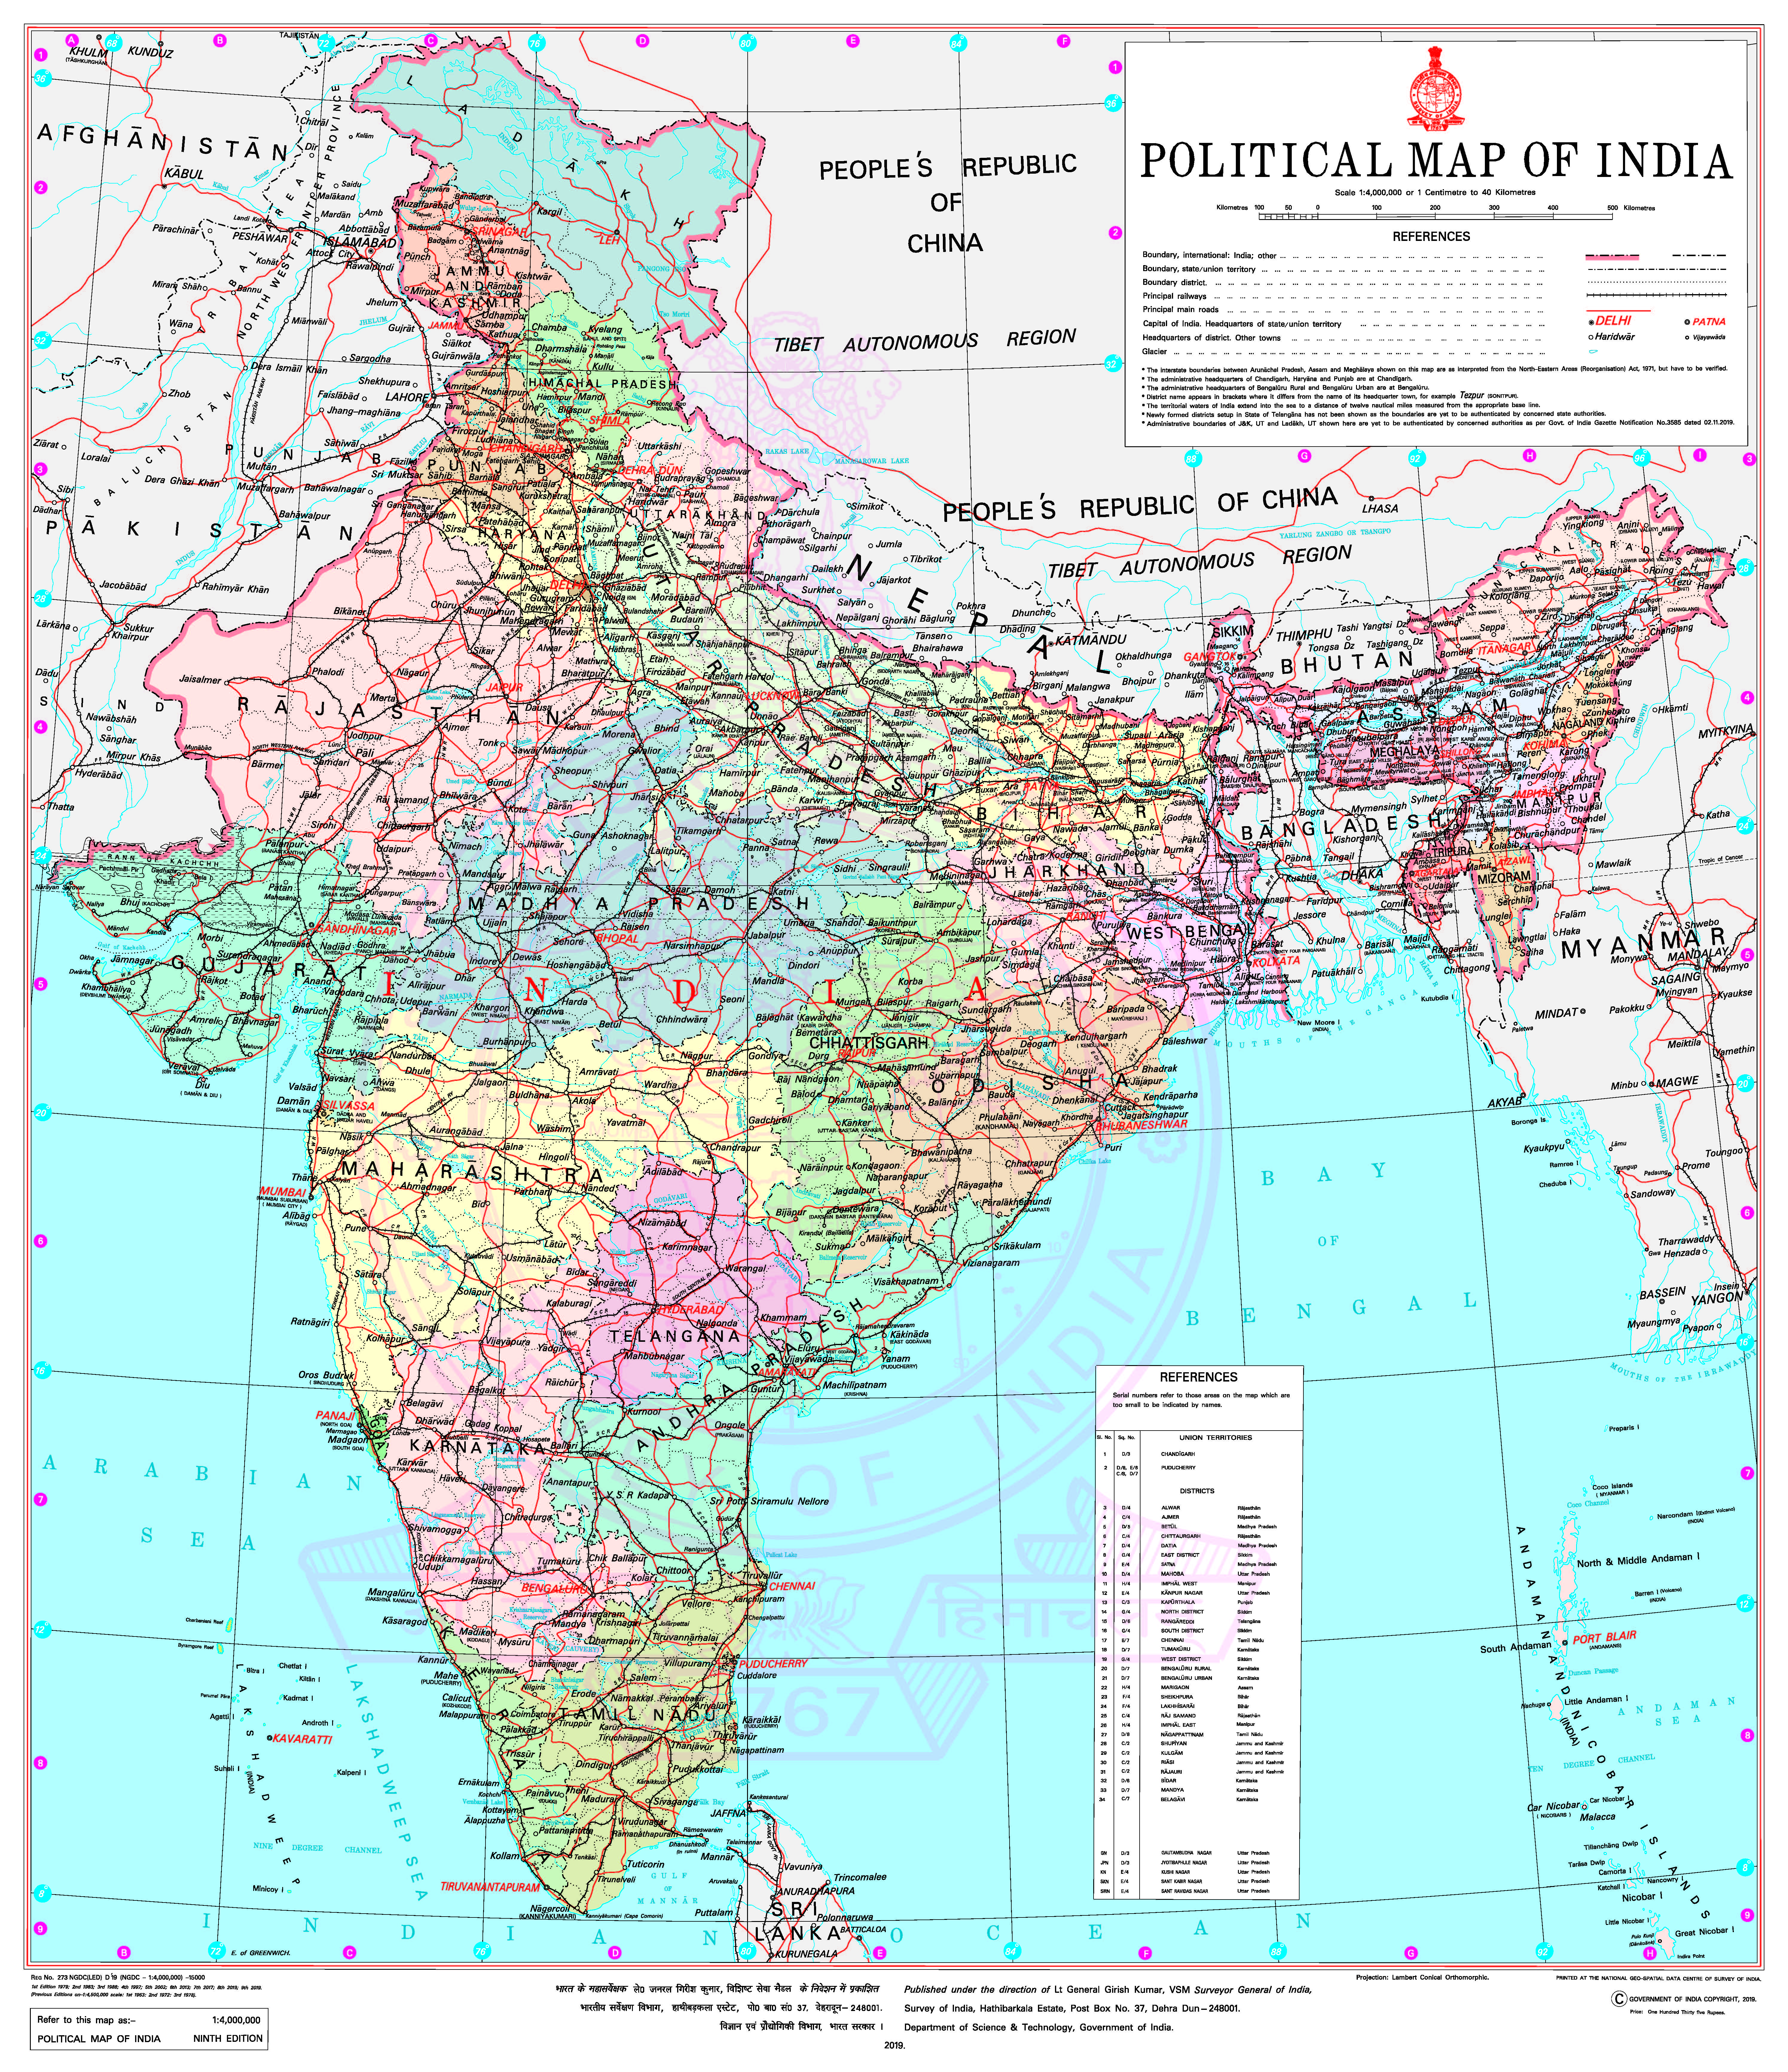 amaravathi notifyied in new indian map